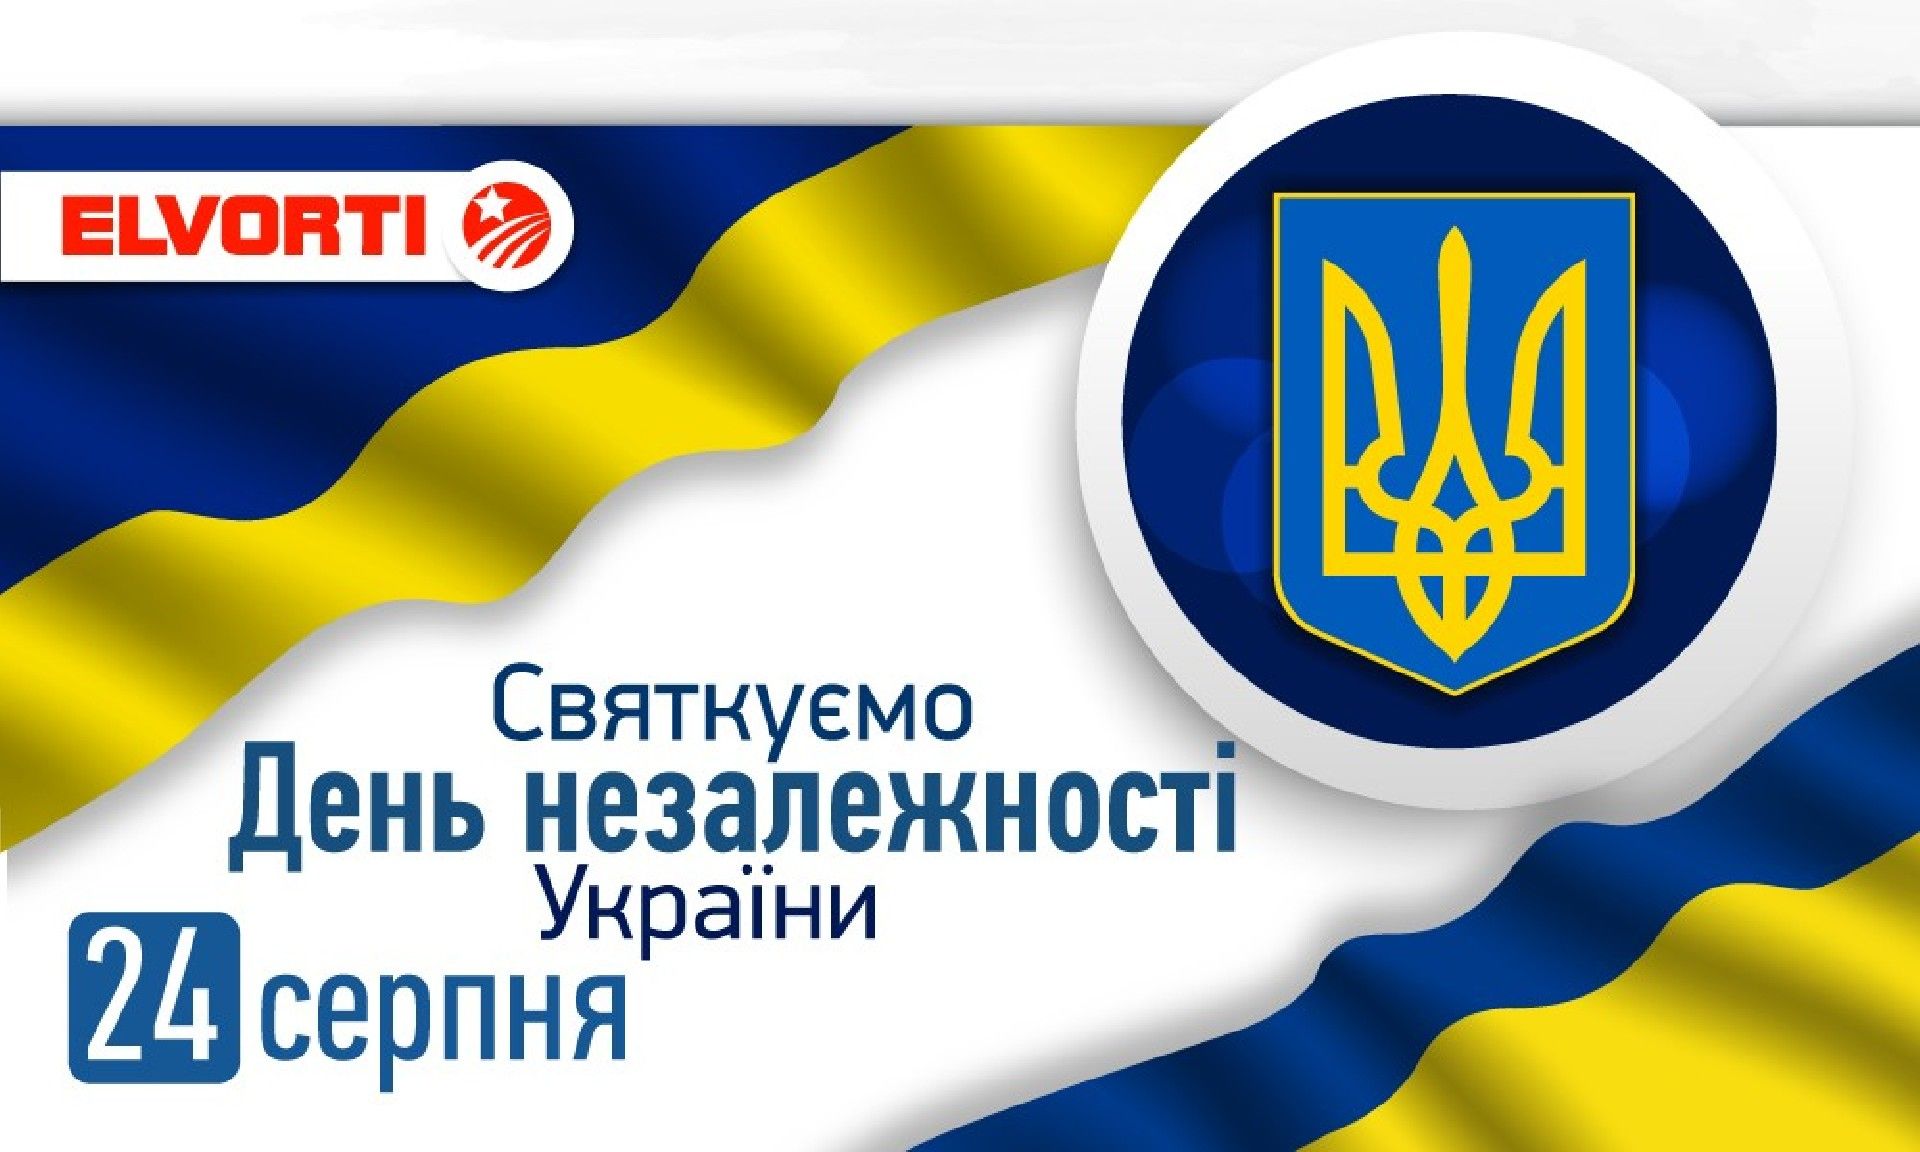 Компания Эльворти поздравляет с Днем Независимости Украины!